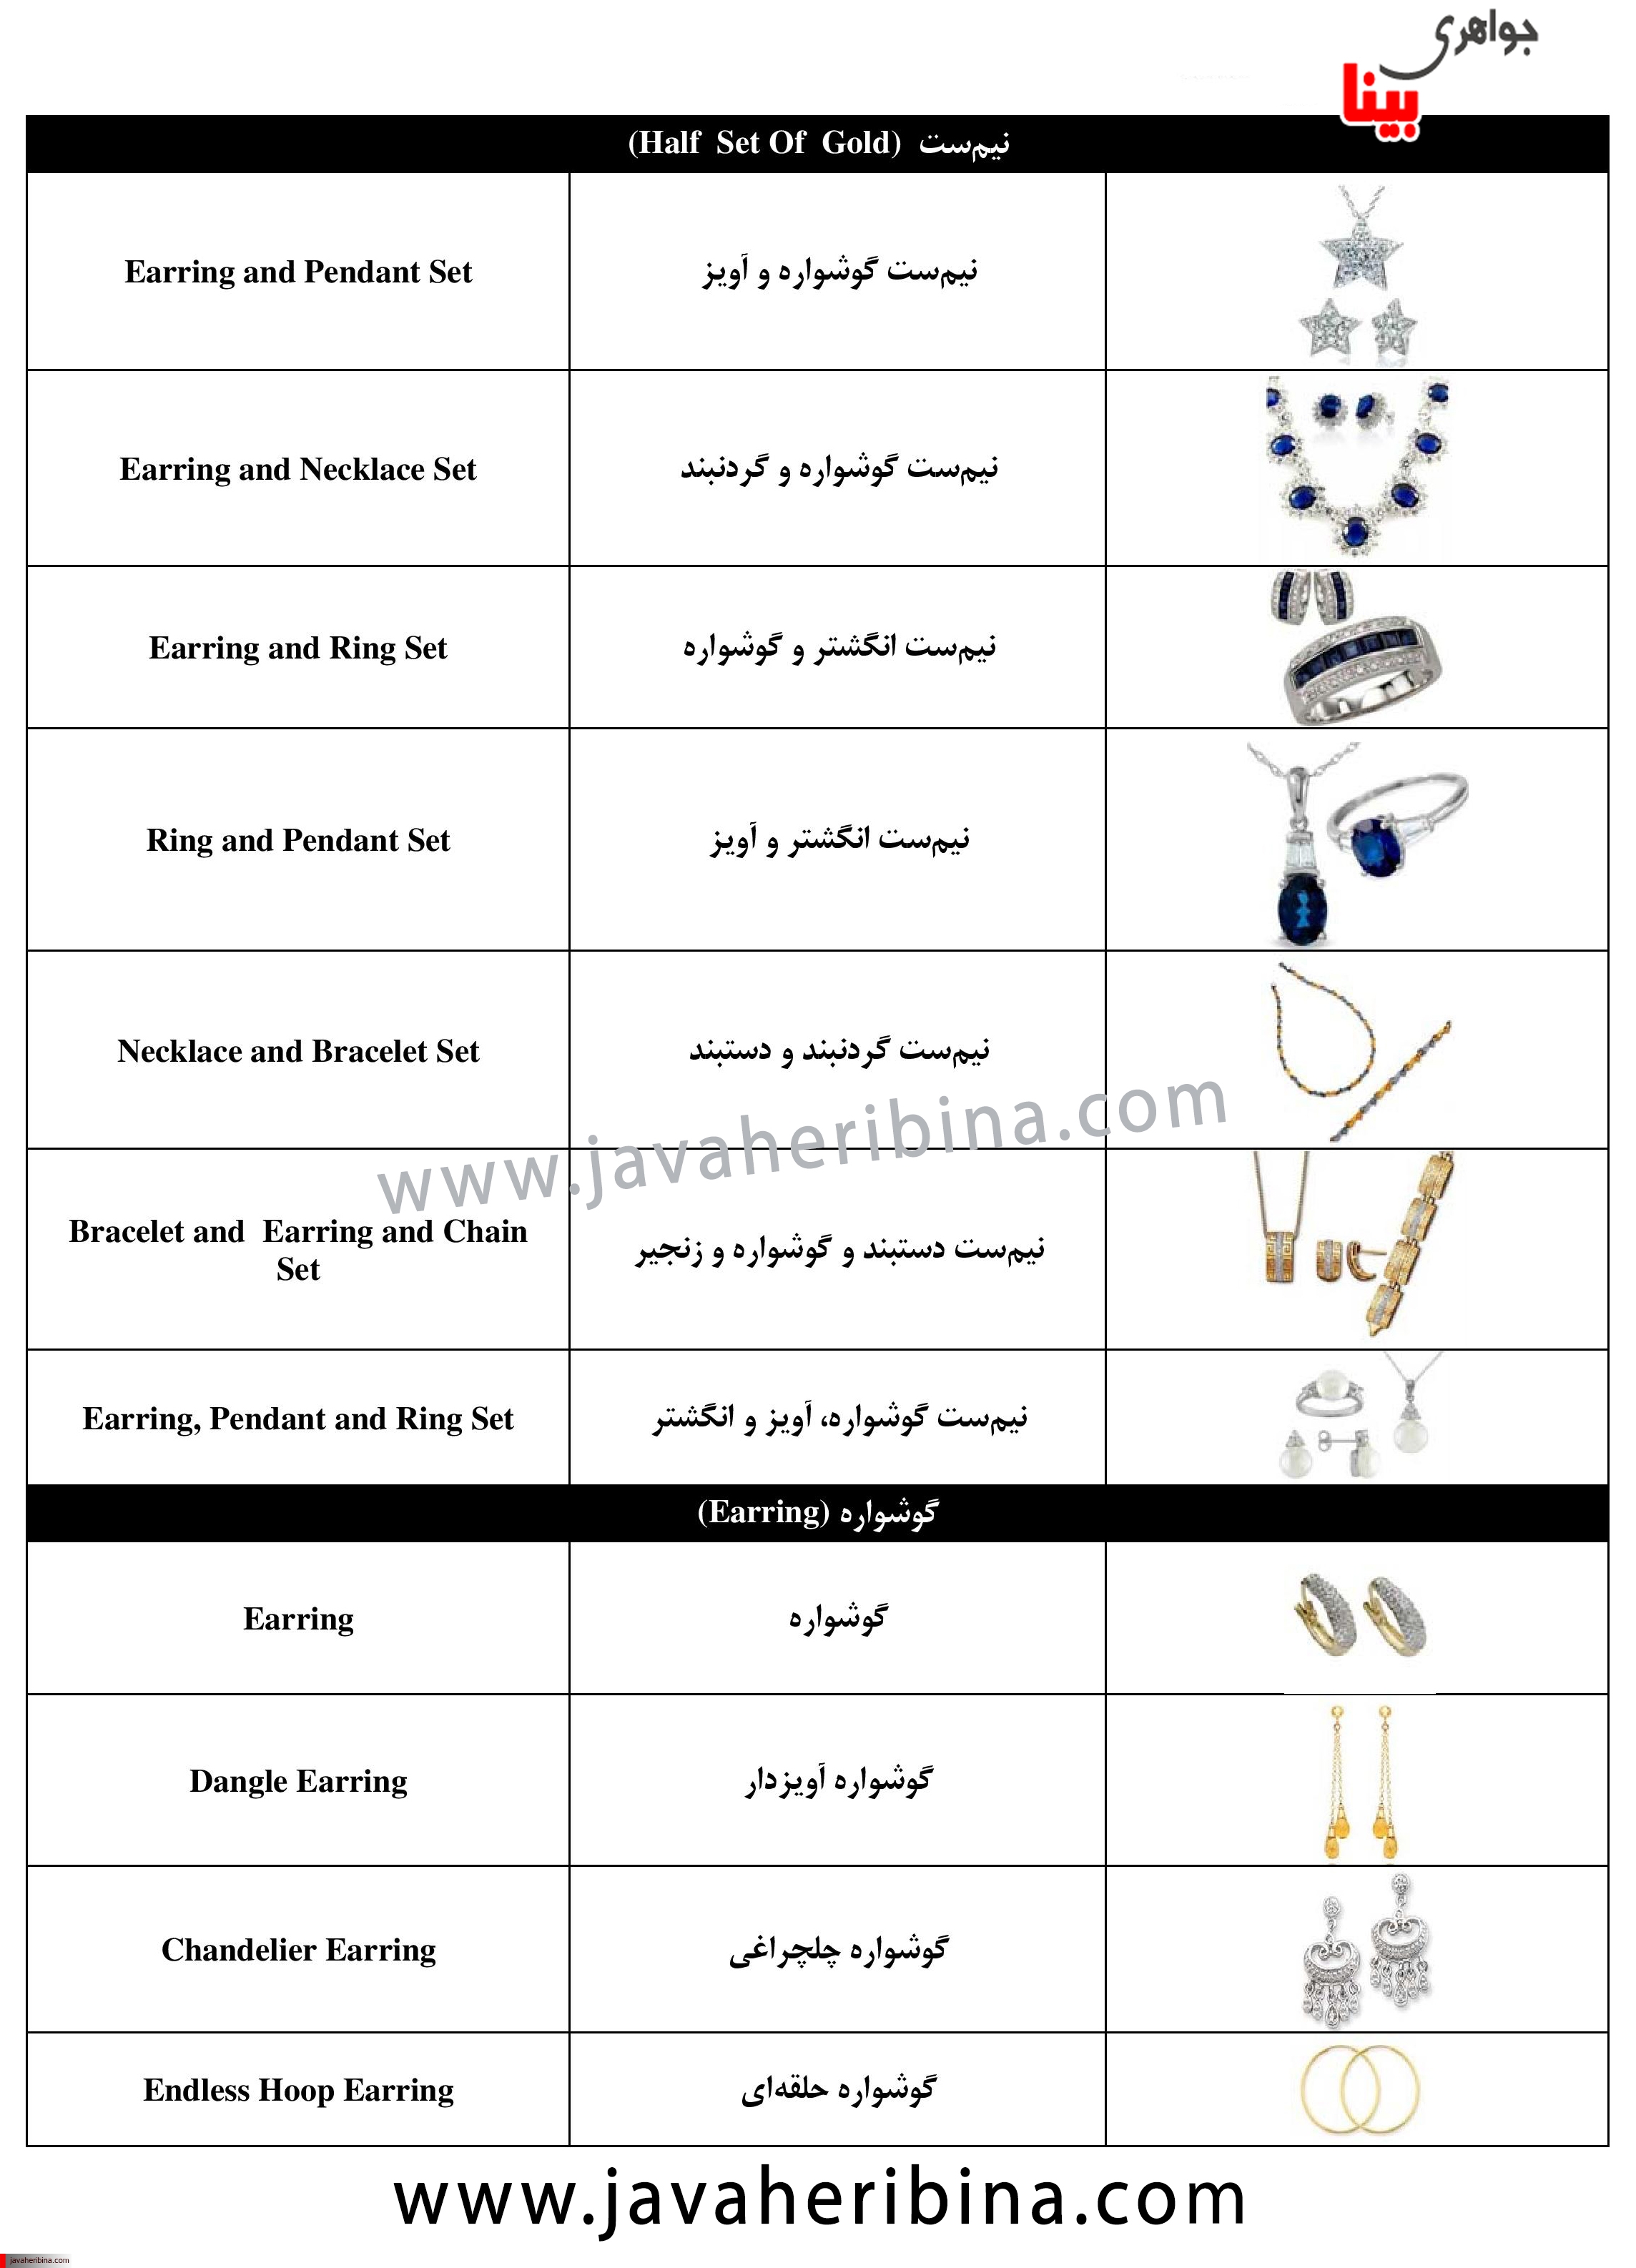 جدول آشنایی با واژه های انگلیسی مصنوعات طلا و جواهر